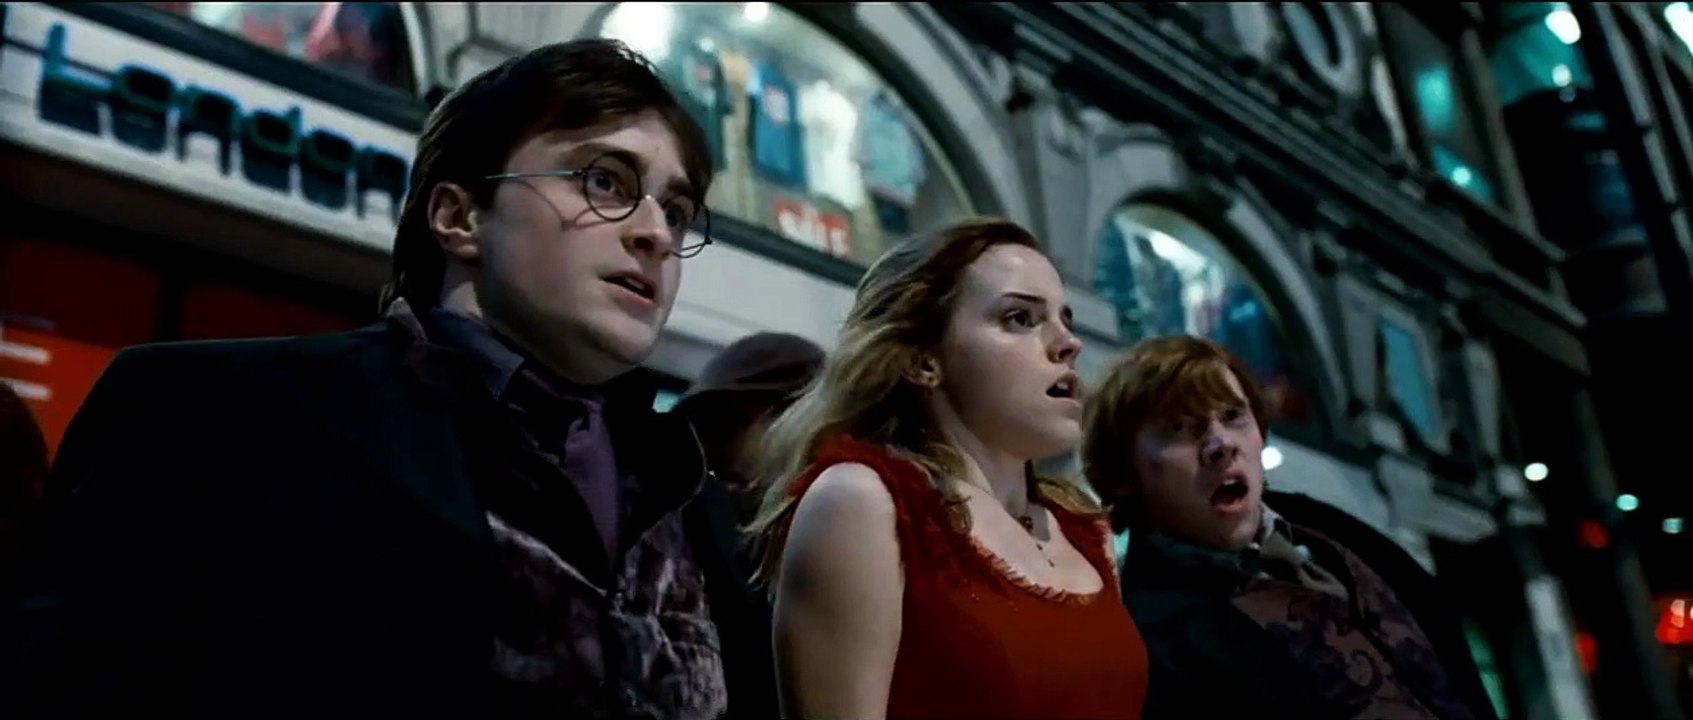 Harry Potter und die Heiligtümer des Todes - Teil 1 Trailer (2) DF